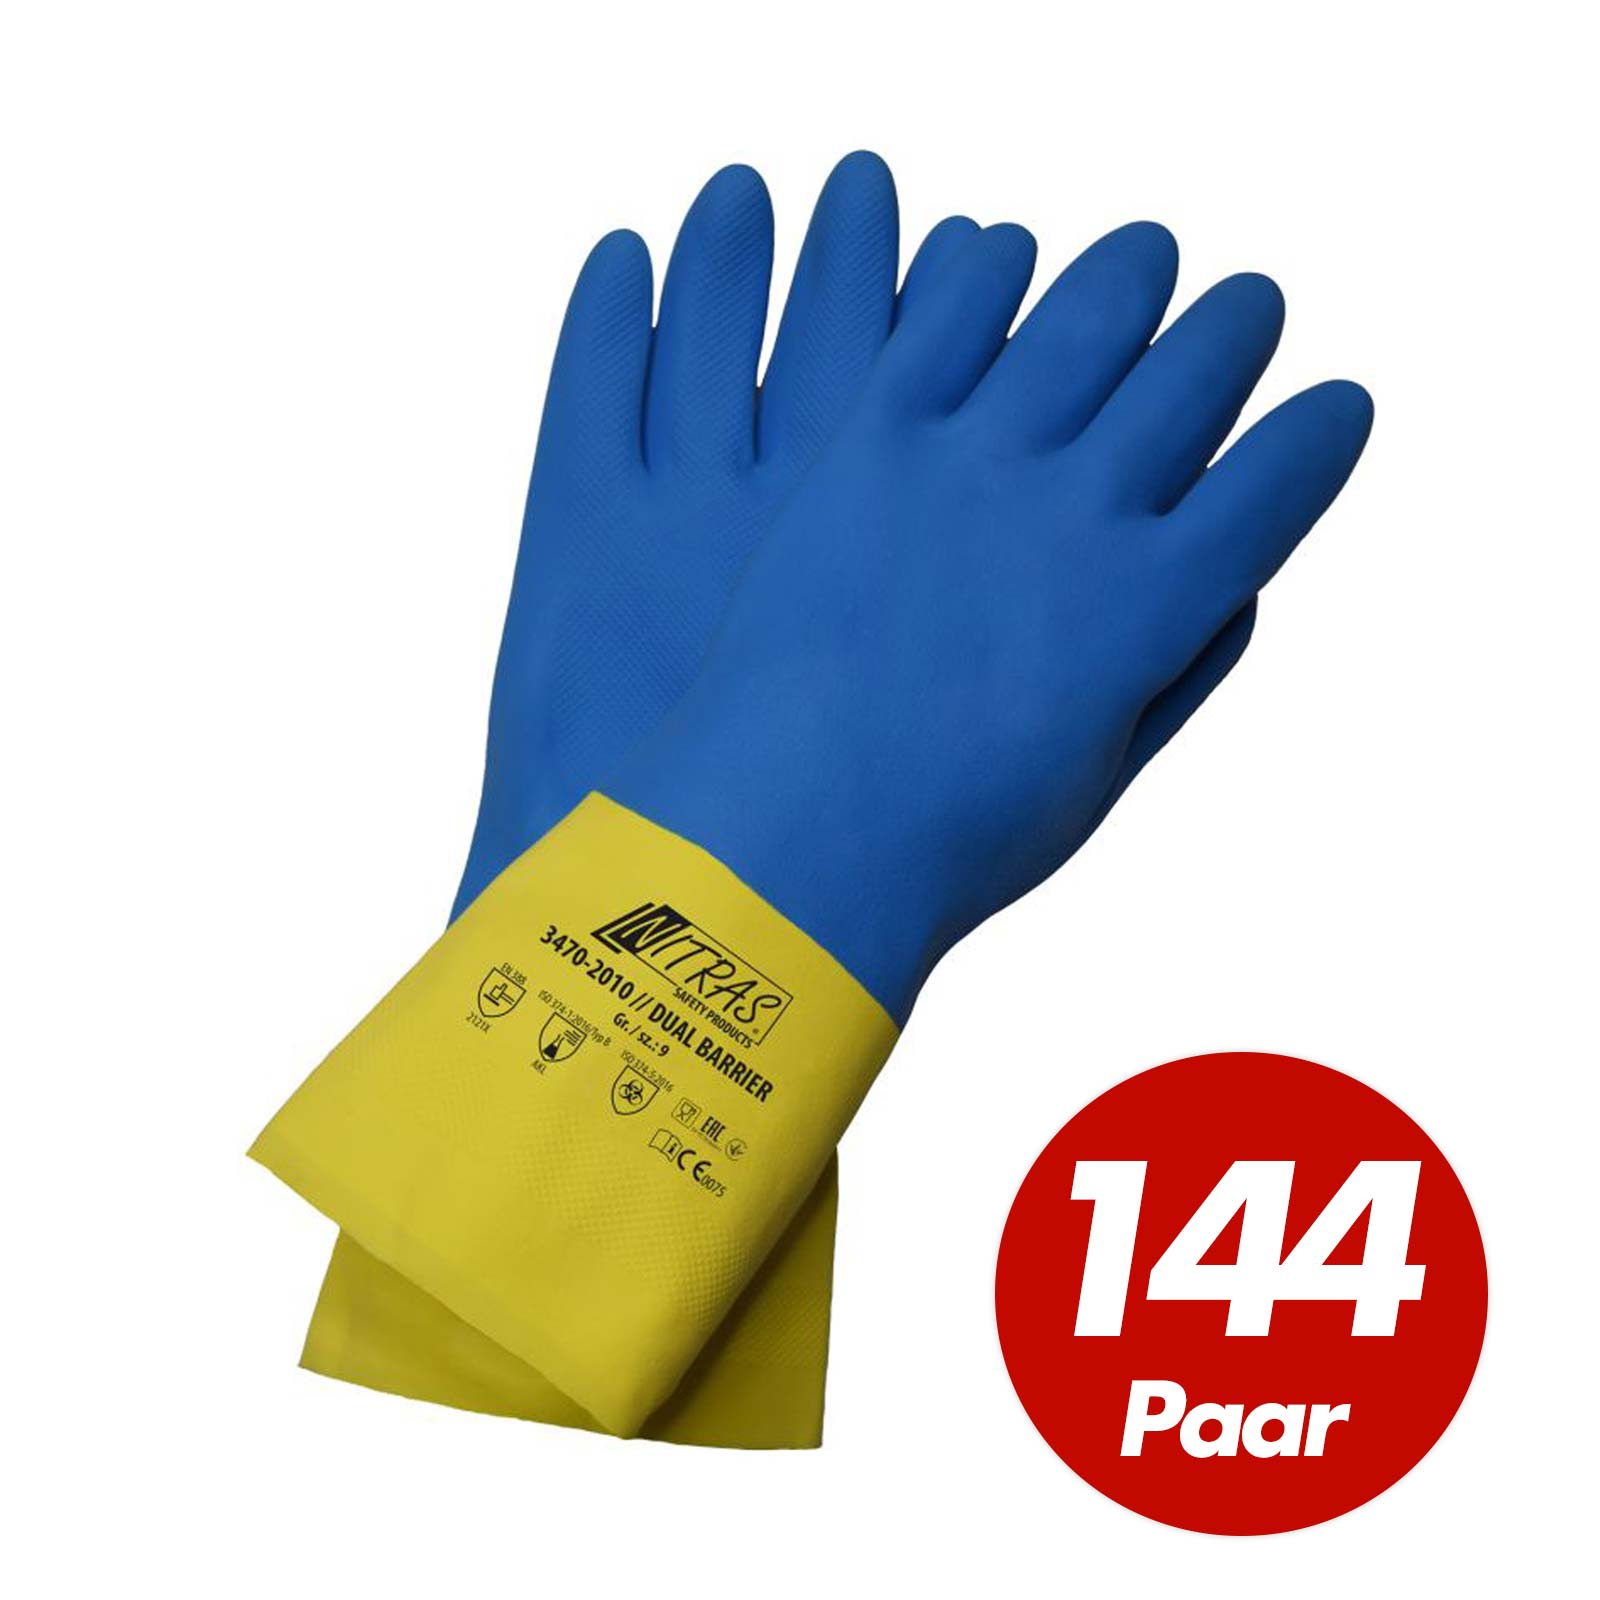 NITRAS 3470 Dual Barrier Chemikalien Schutzhandschuhe blau-gelb 300mm - 144 Paar Größe:10 von NITRAS